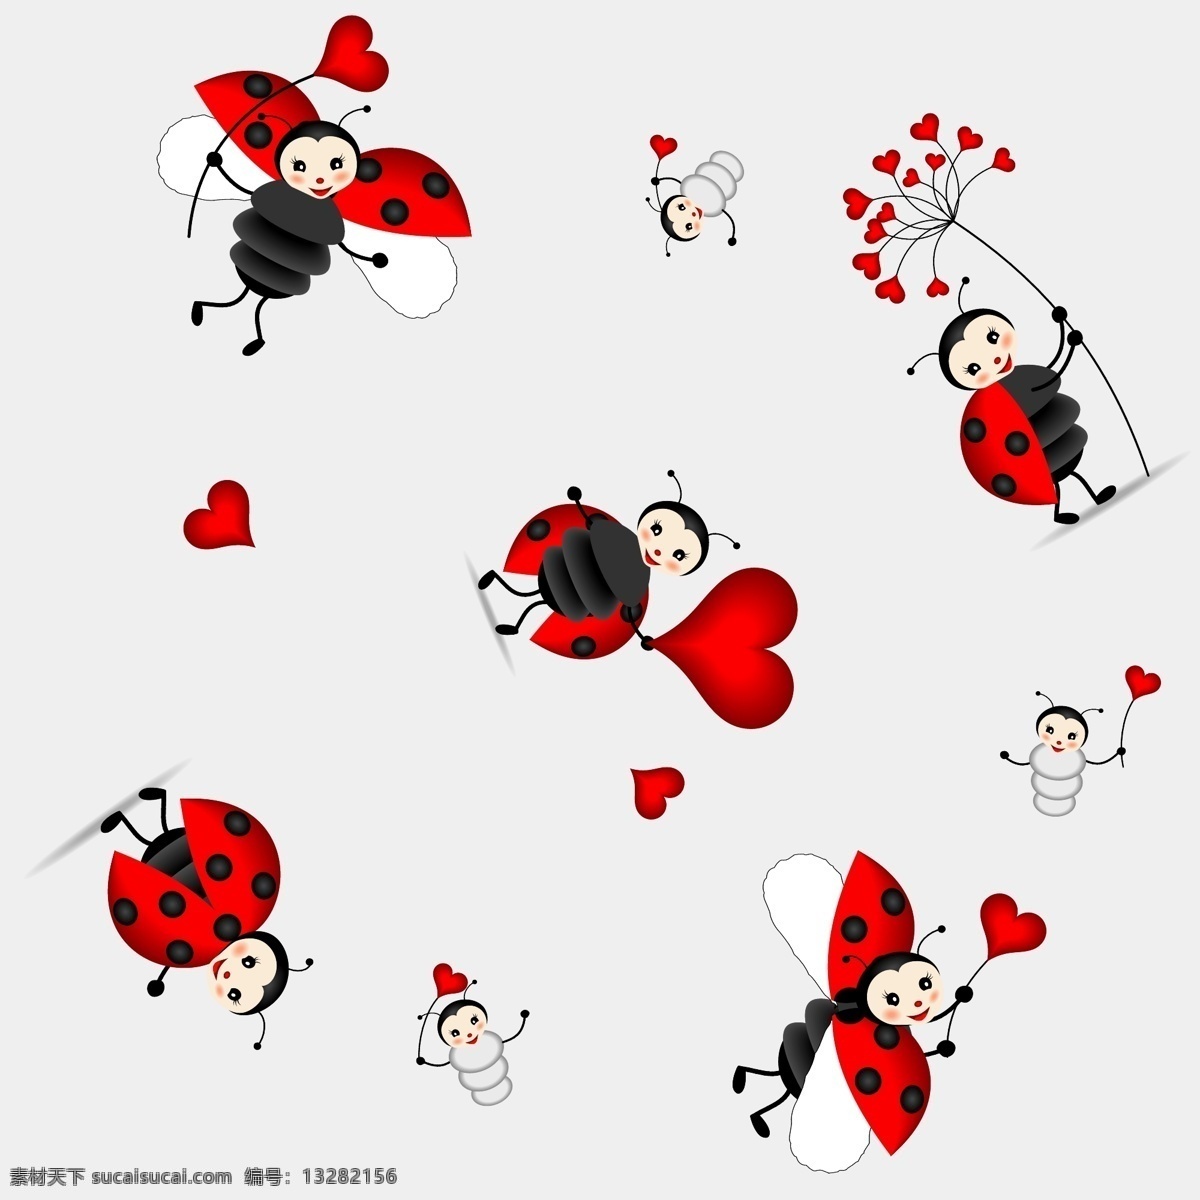 可爱 瓢虫 矢量 爱心 彩绘 虫子 花纹 卡通 昆虫 矢量图